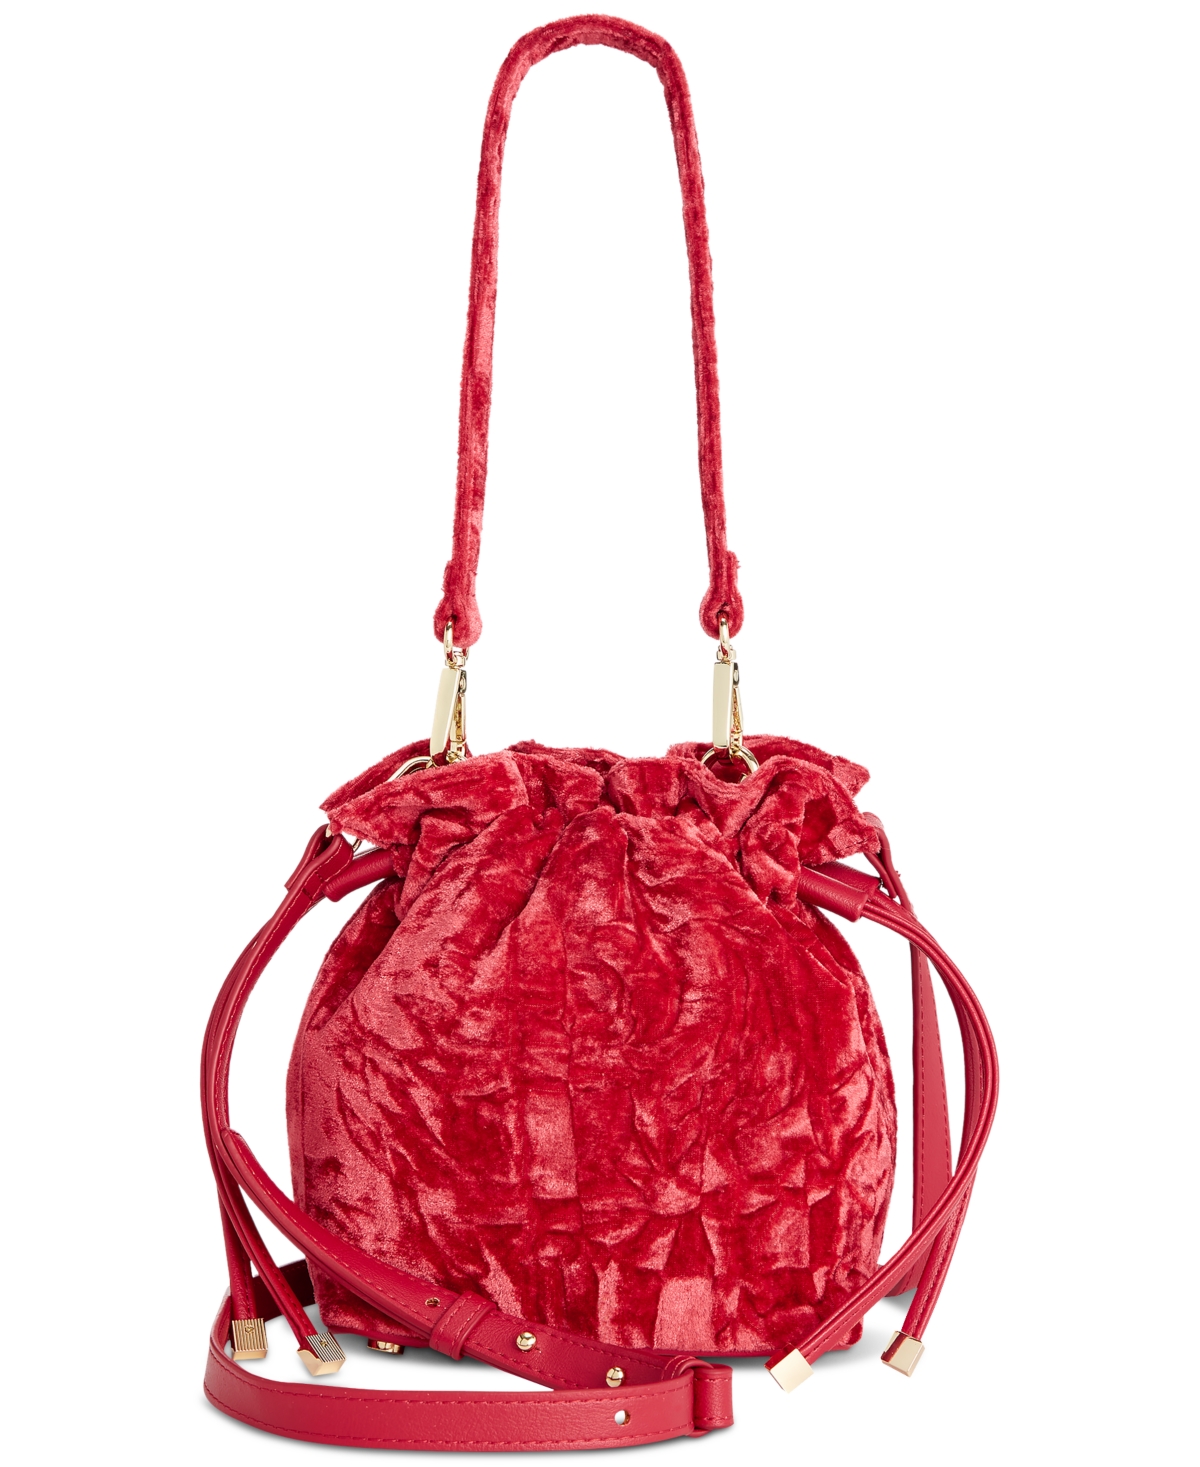 Meliss Small Velvet Bucket Bag, Created for Macy's - Red Pepper Vlvt